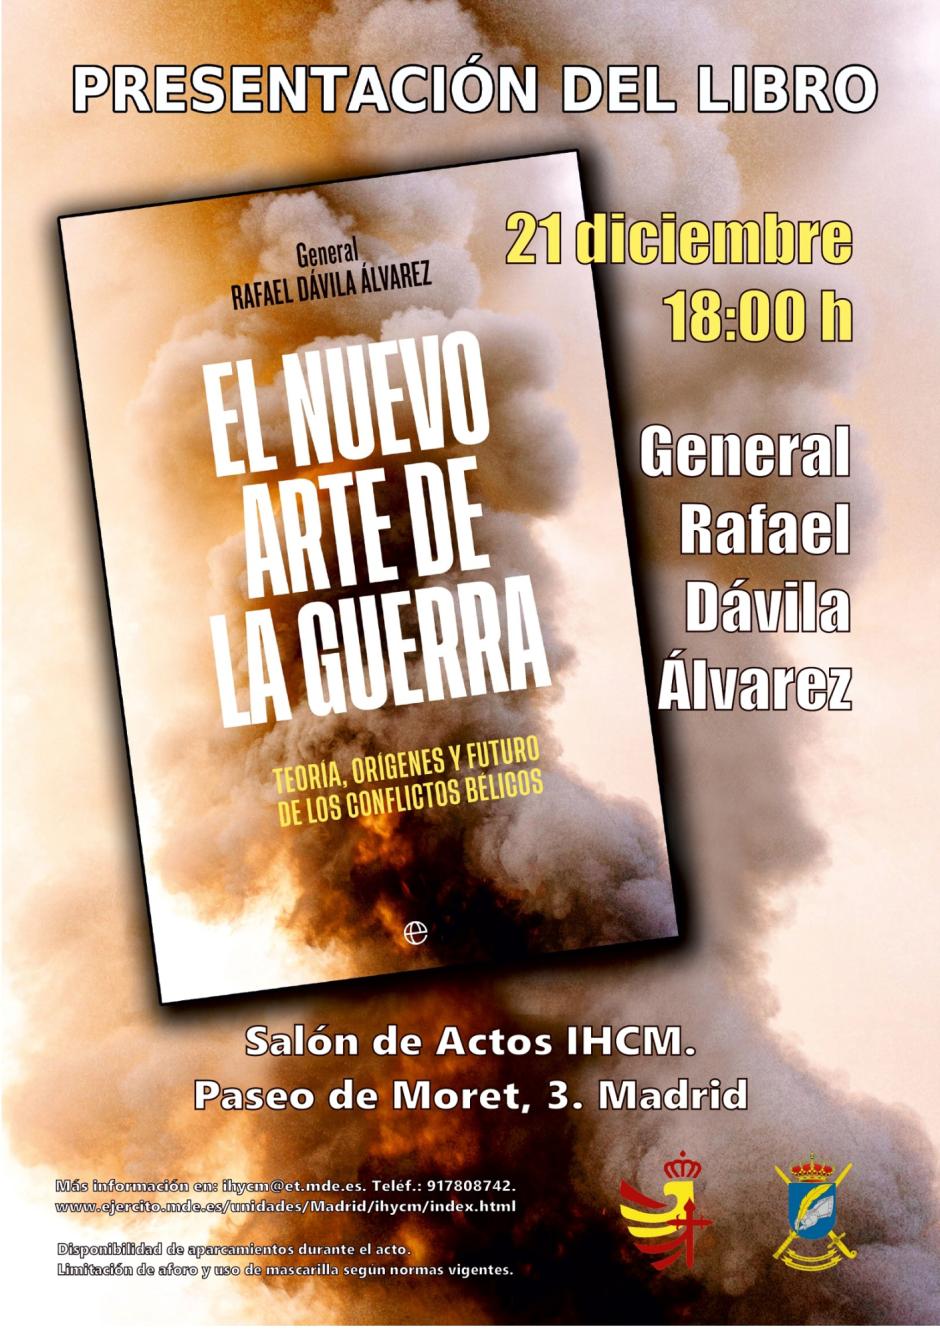 Cartel del nuevo llibro del general Rafael Dávila "El nuevo arte de la guerra"